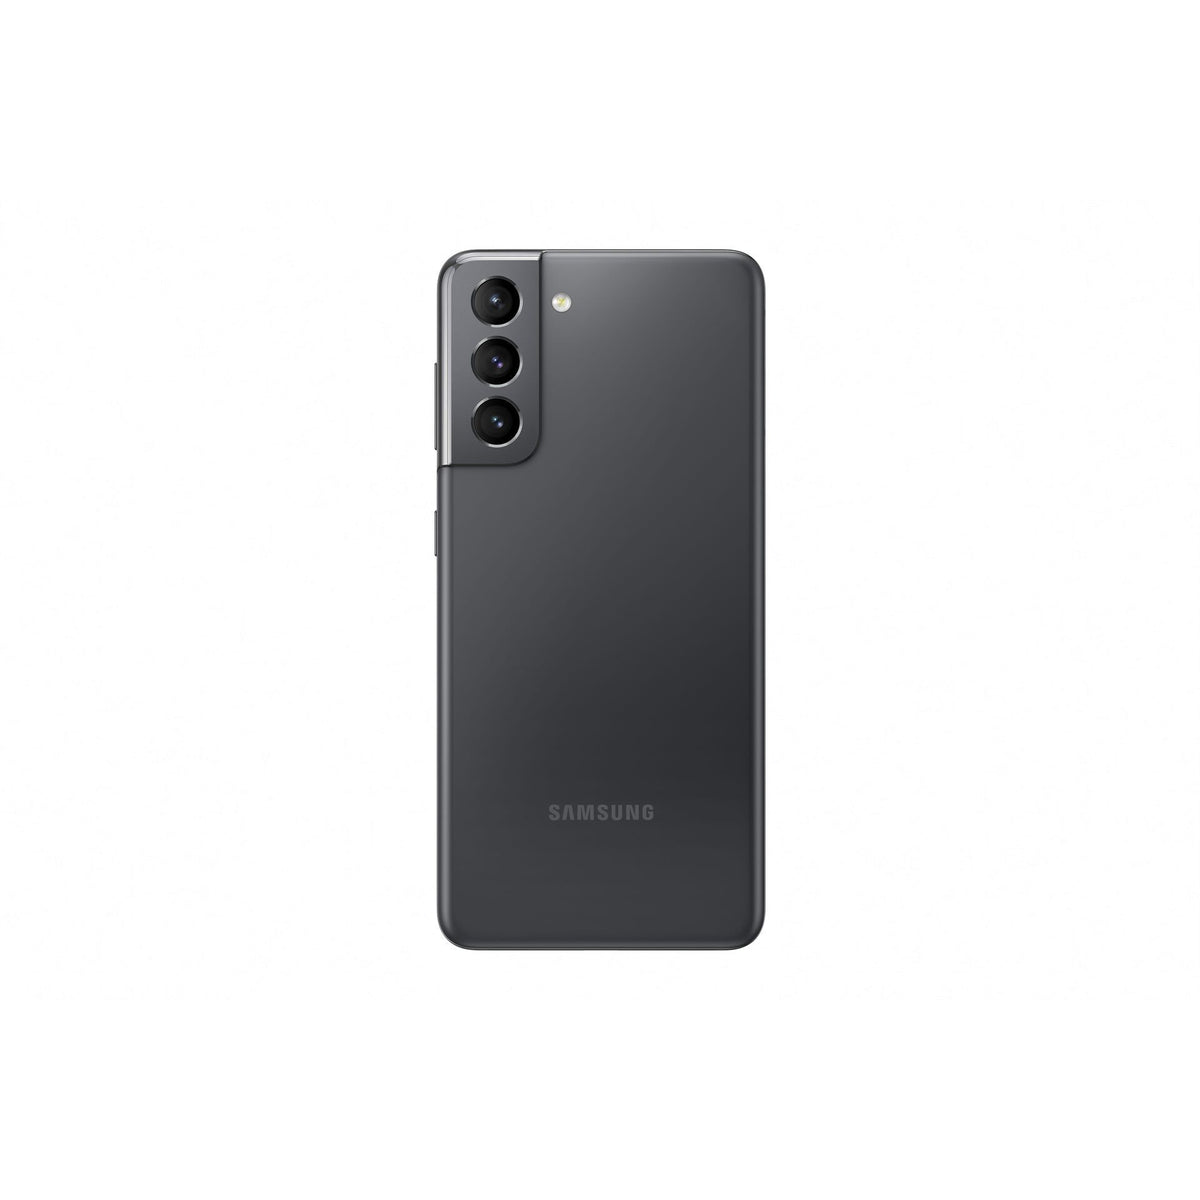 Mobilní telefon Samsung Galaxy S21 8GB/128GB, šedá